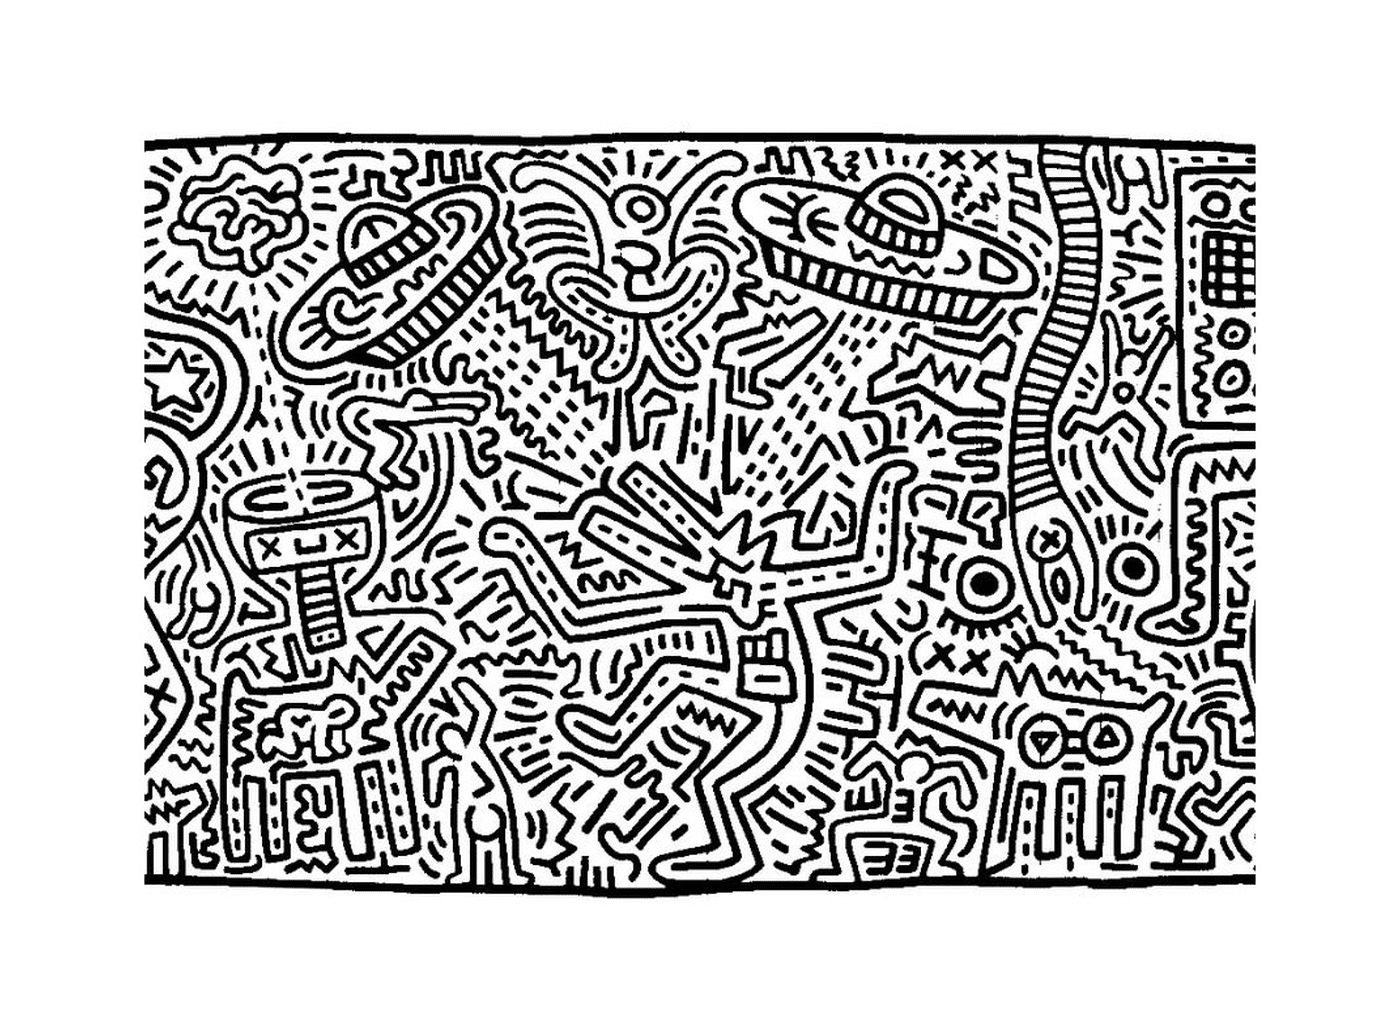  una obra de arte de Keith Haring 